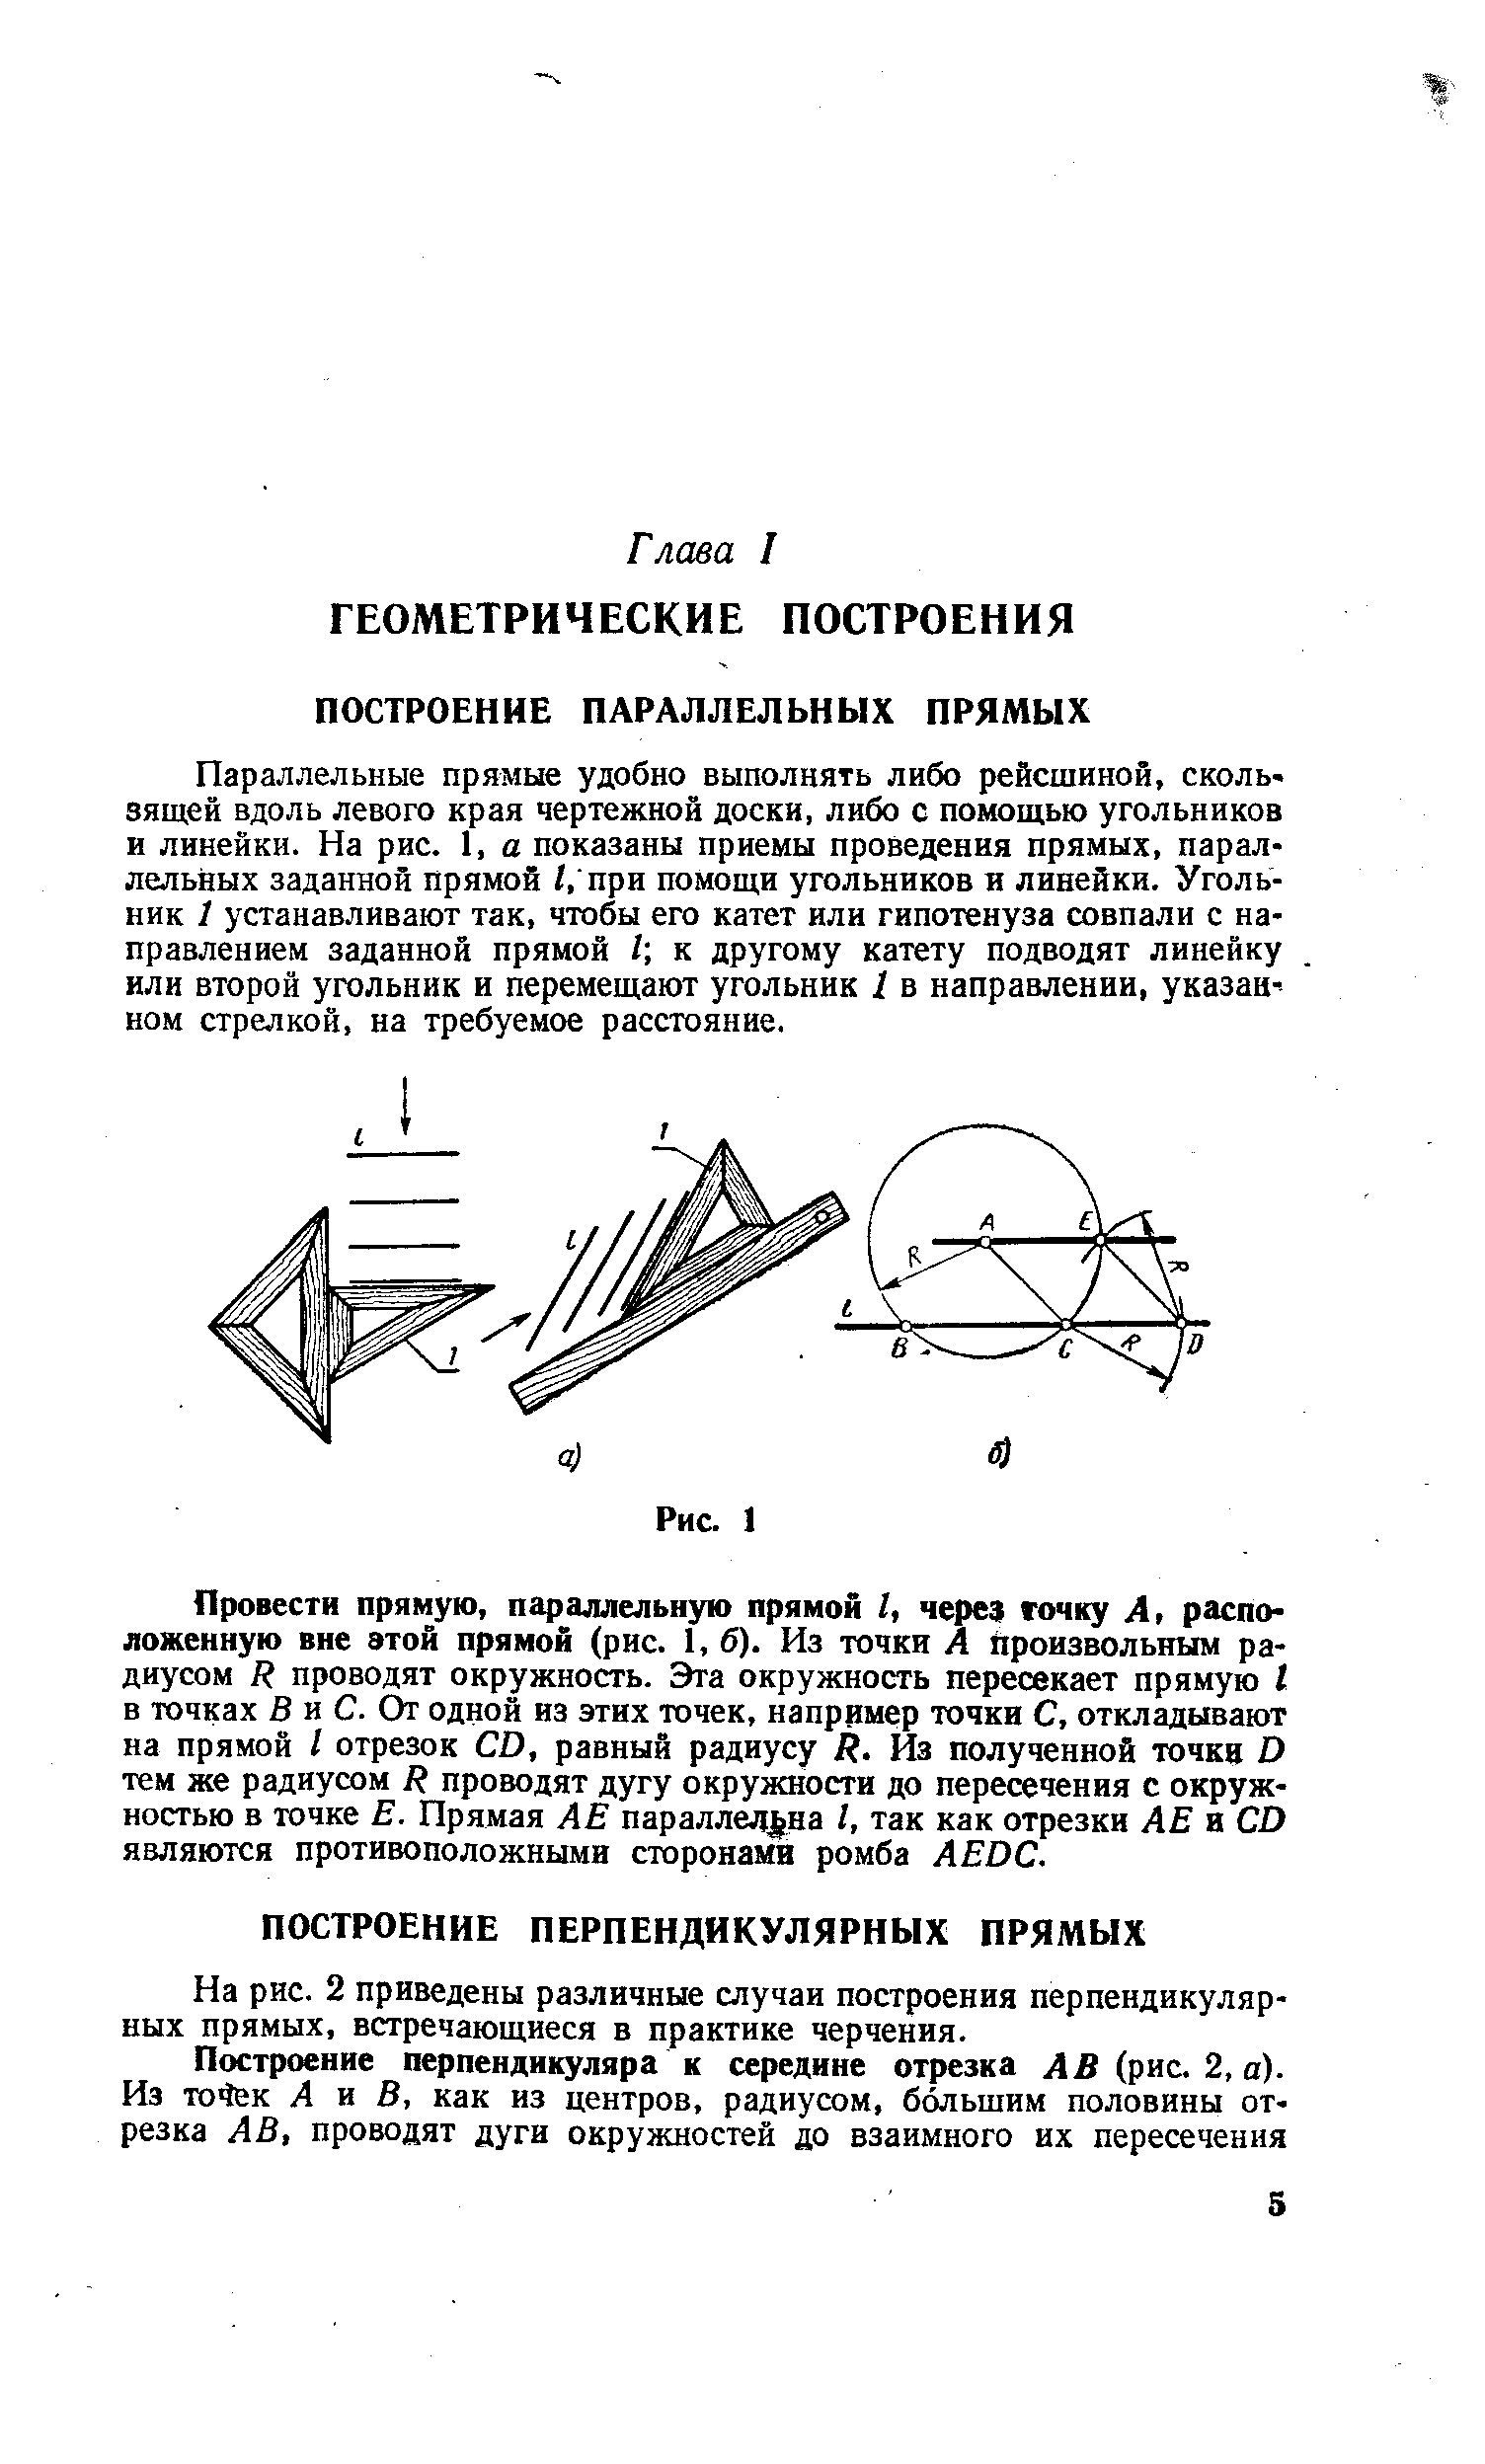 На рис. 2 приведены различные случаи построения перпендикулярных прямых, встречающиеся в практике черчения.
